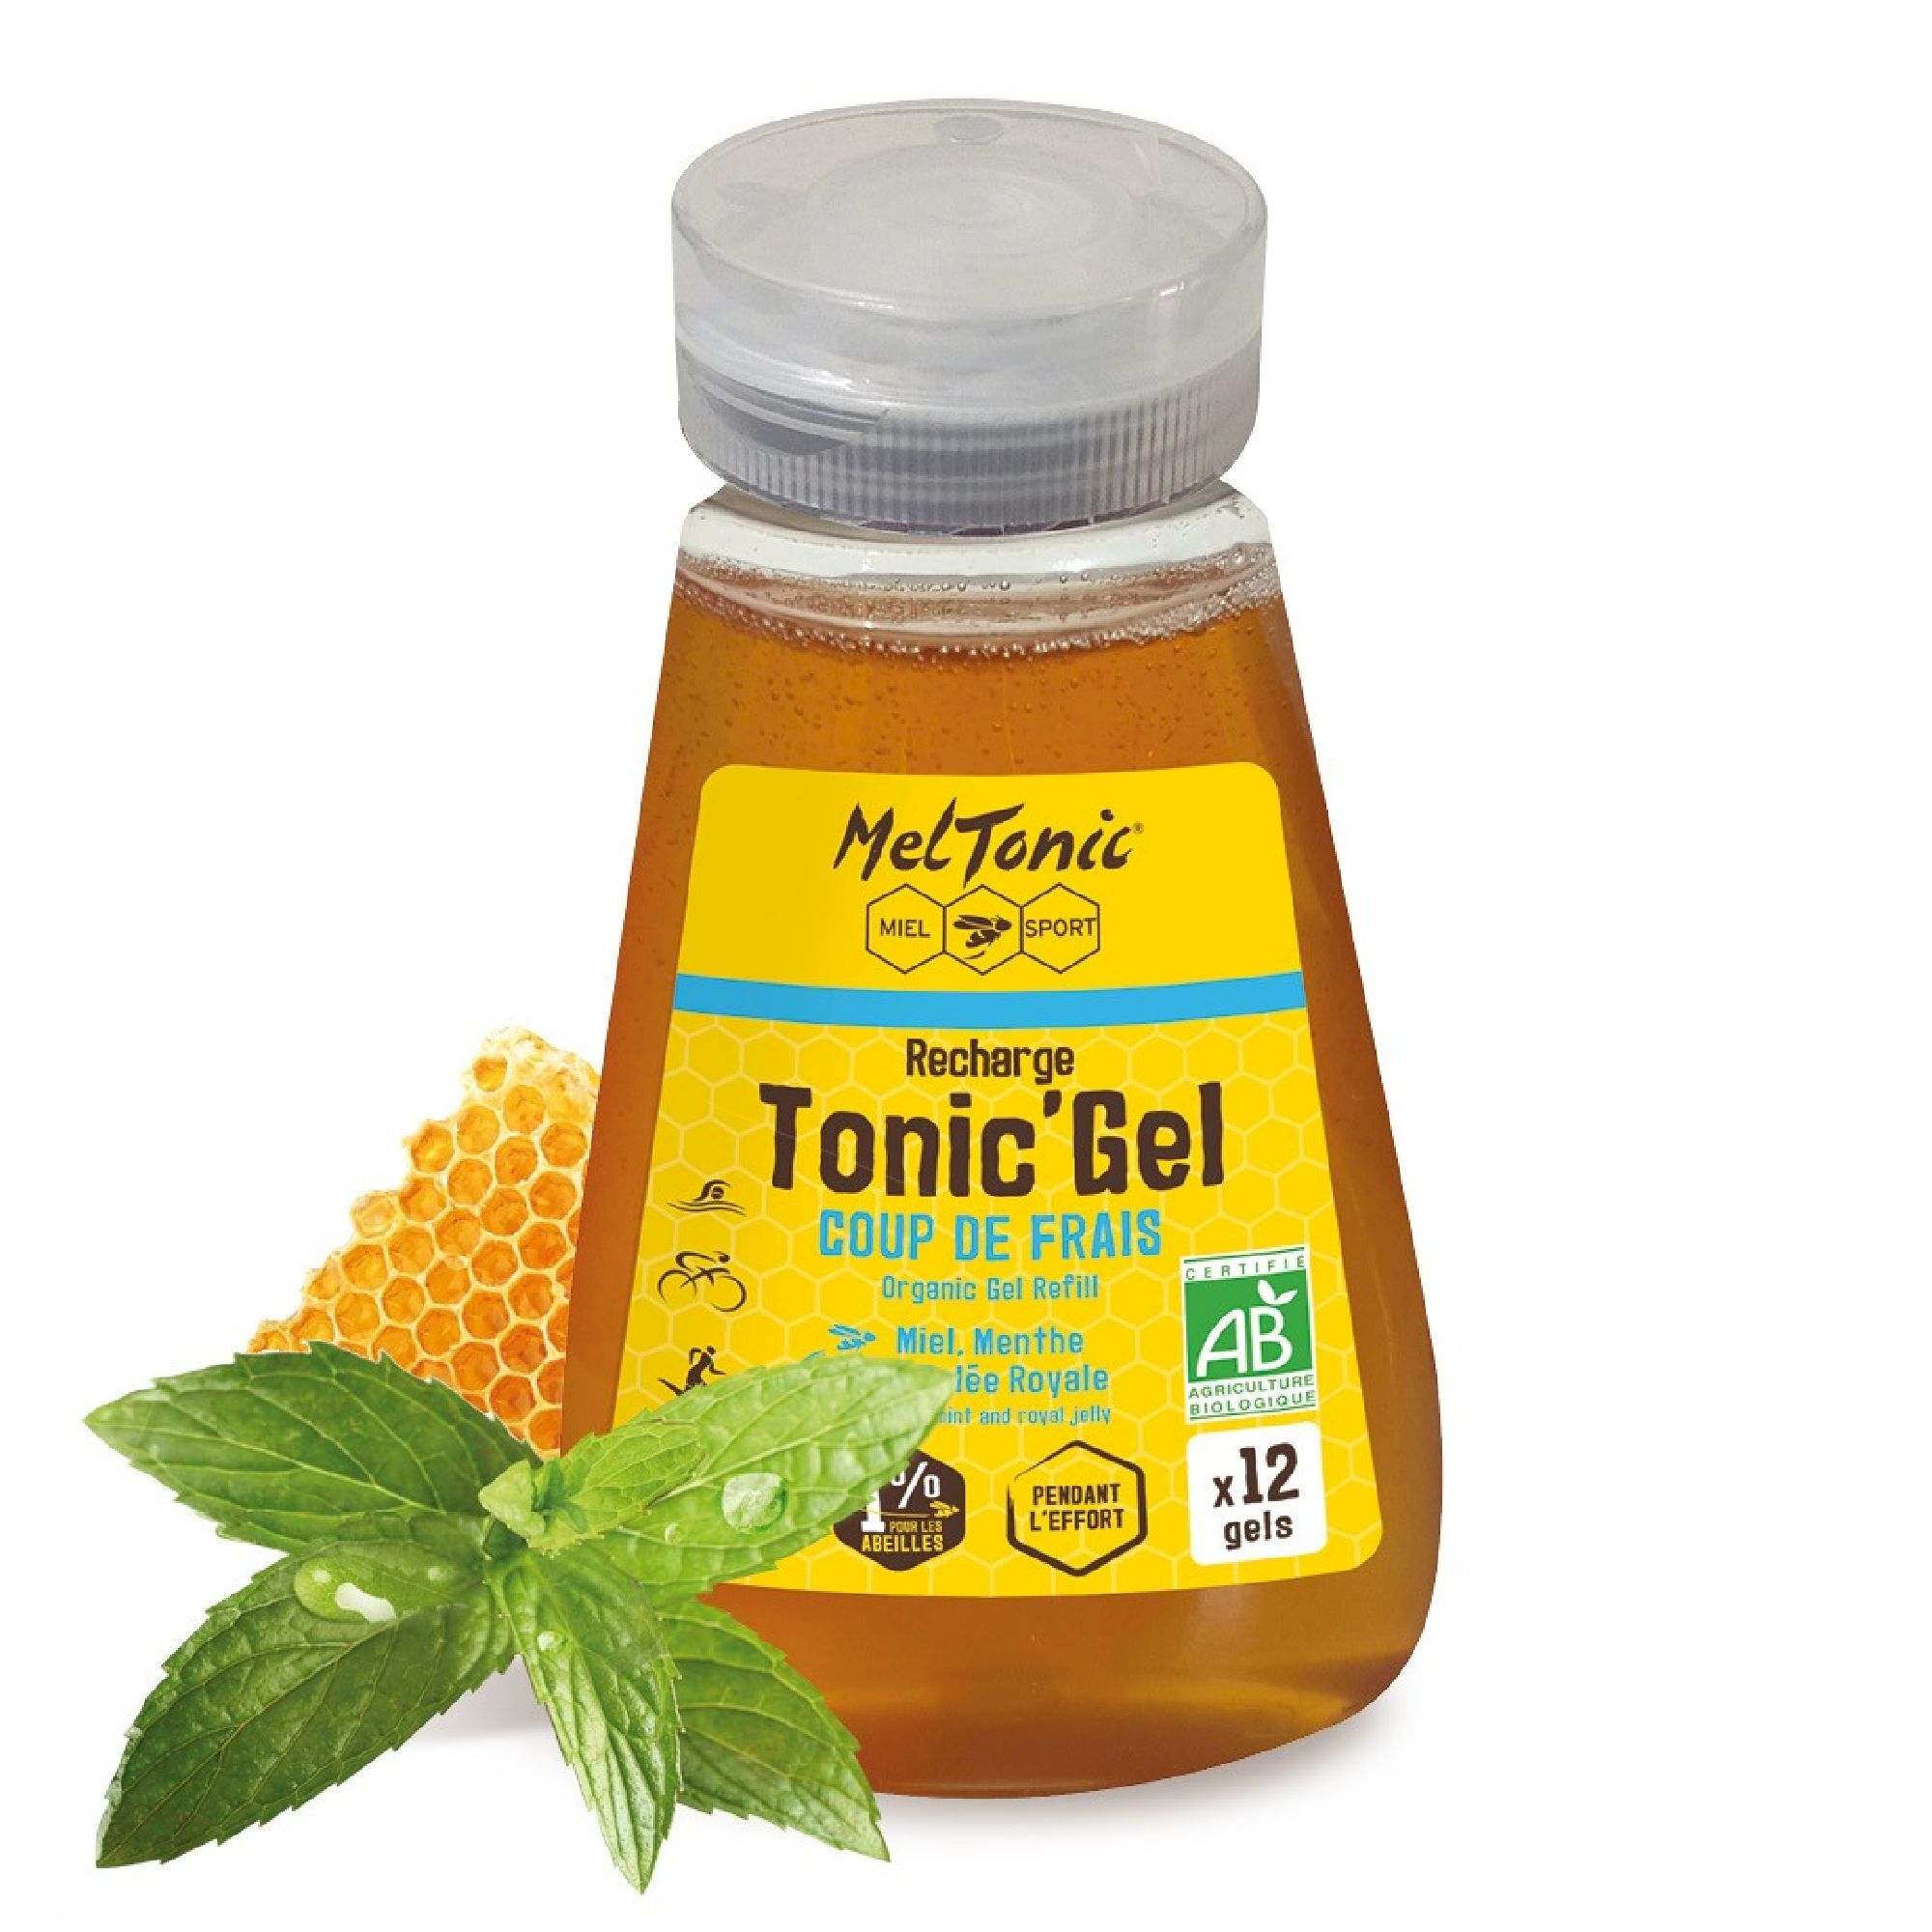 Meltonic Tonic Gel Bio Coup De Frais - Recharge Eco - Energigel